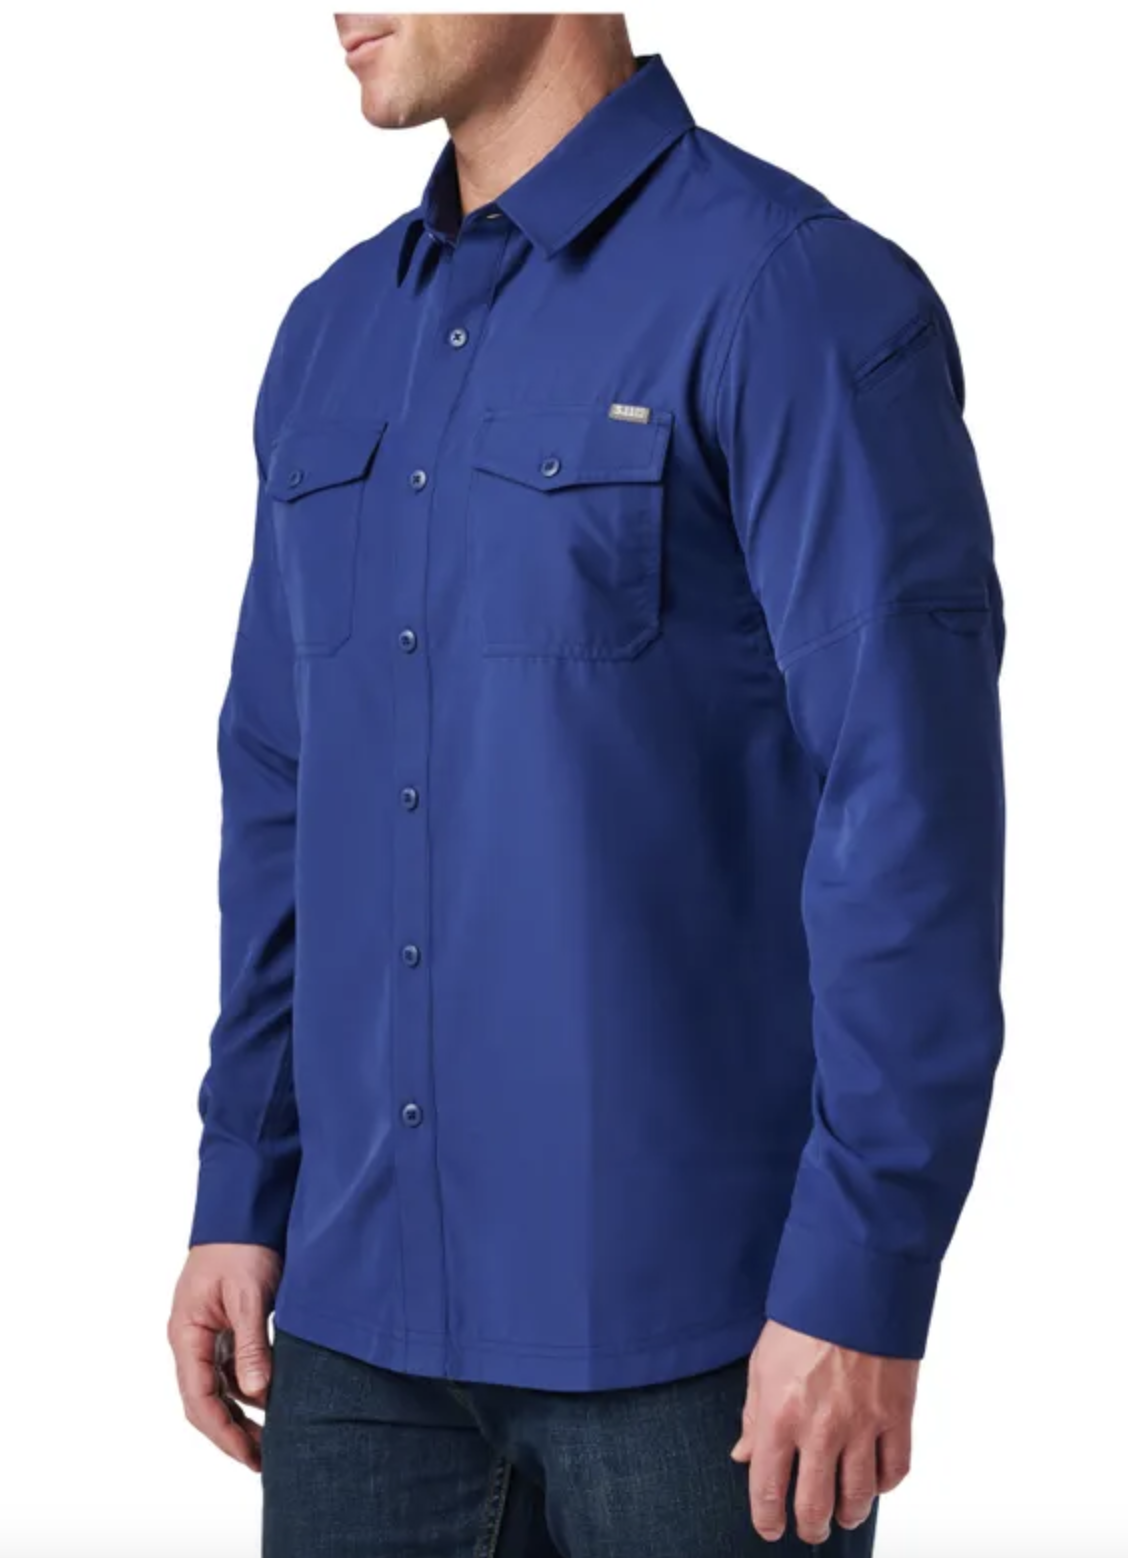 5.11 - Marksman Long Sleeve Shirt UPF 50+ - Blue Mussel (1074)